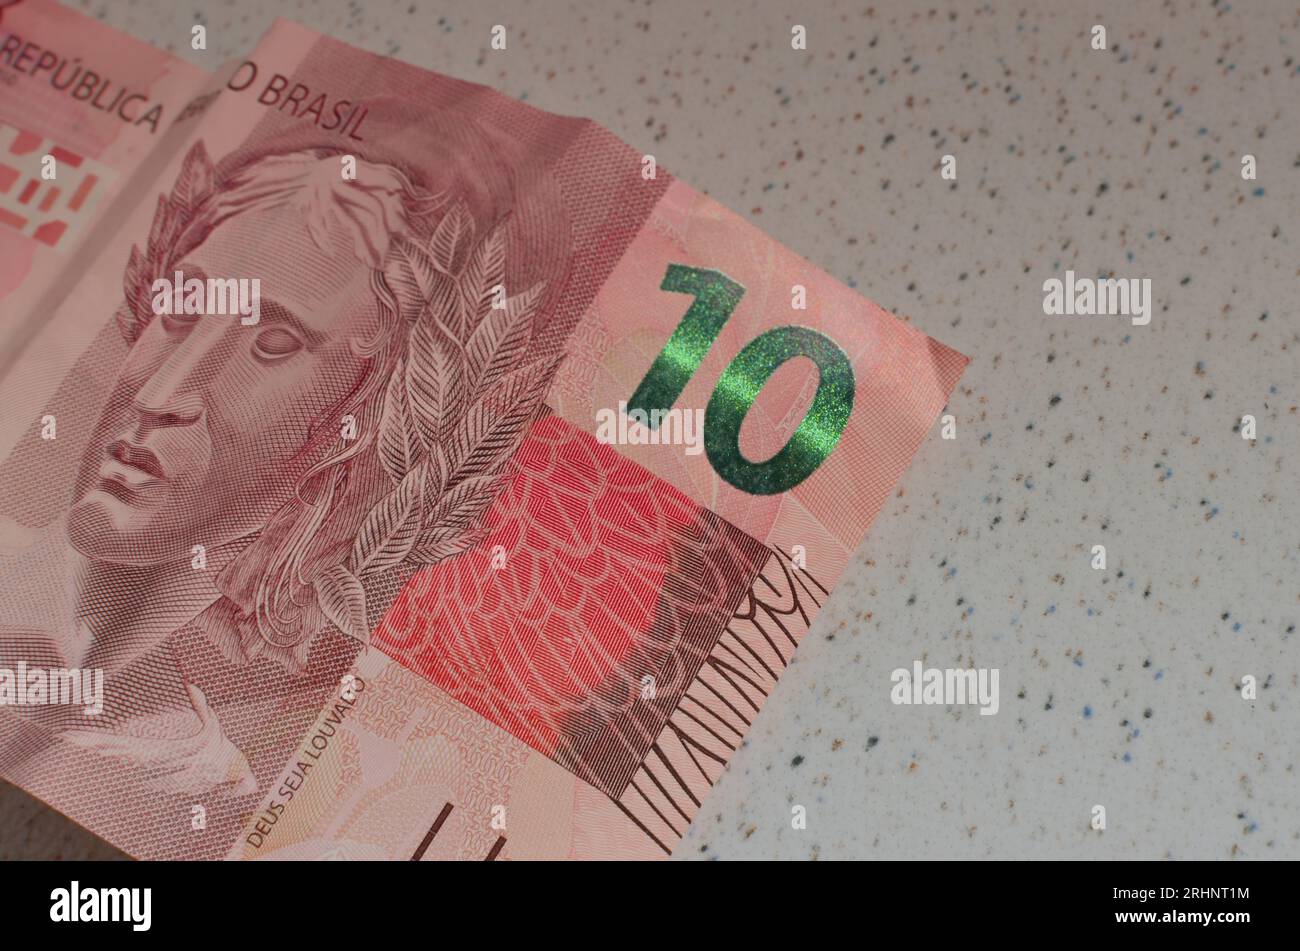 Dettaglio della banconota da 10 reais do Brasil, una valuta brasiliana evidenziata dal suo emblematico colore rosso. Casa da Moeda do Brasil, rappresentante la B. Foto Stock